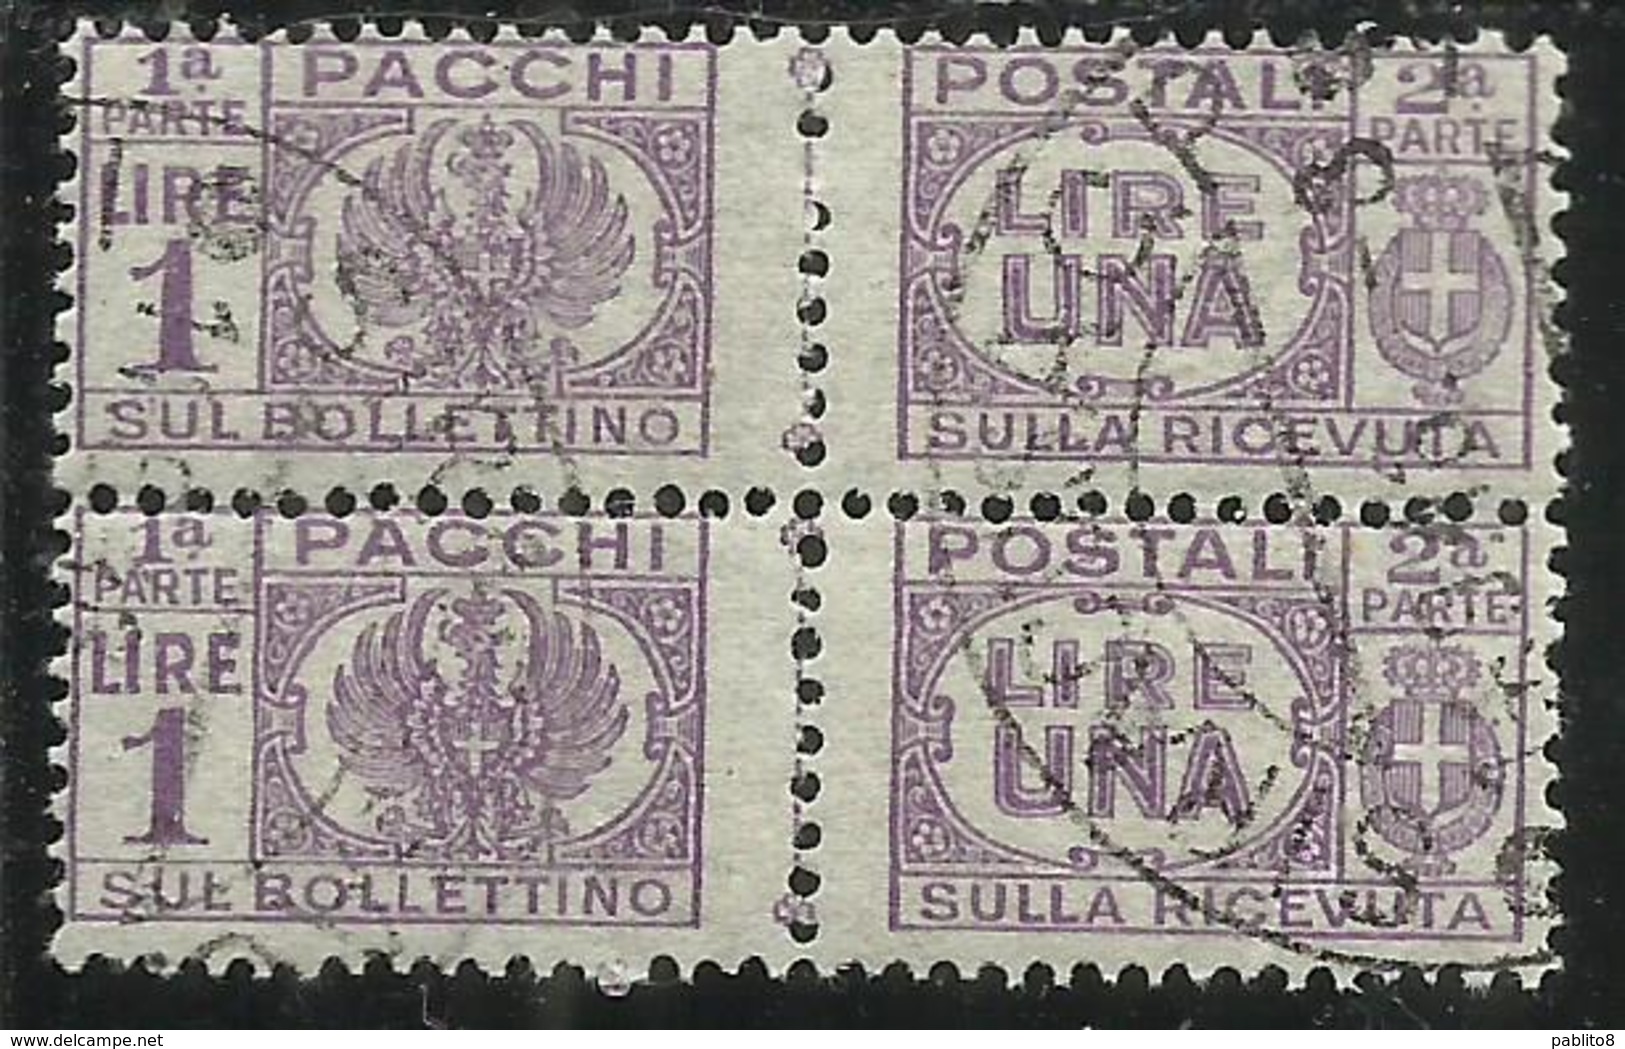 ITALIA REGNO ITALY KINGDOM 1946 LUOGOTENENZA PACCHI POSTALI PARCEL POST SENZA FASCIO LIRE 1 LIRA USATO USED OBLITERE' - Postpaketten